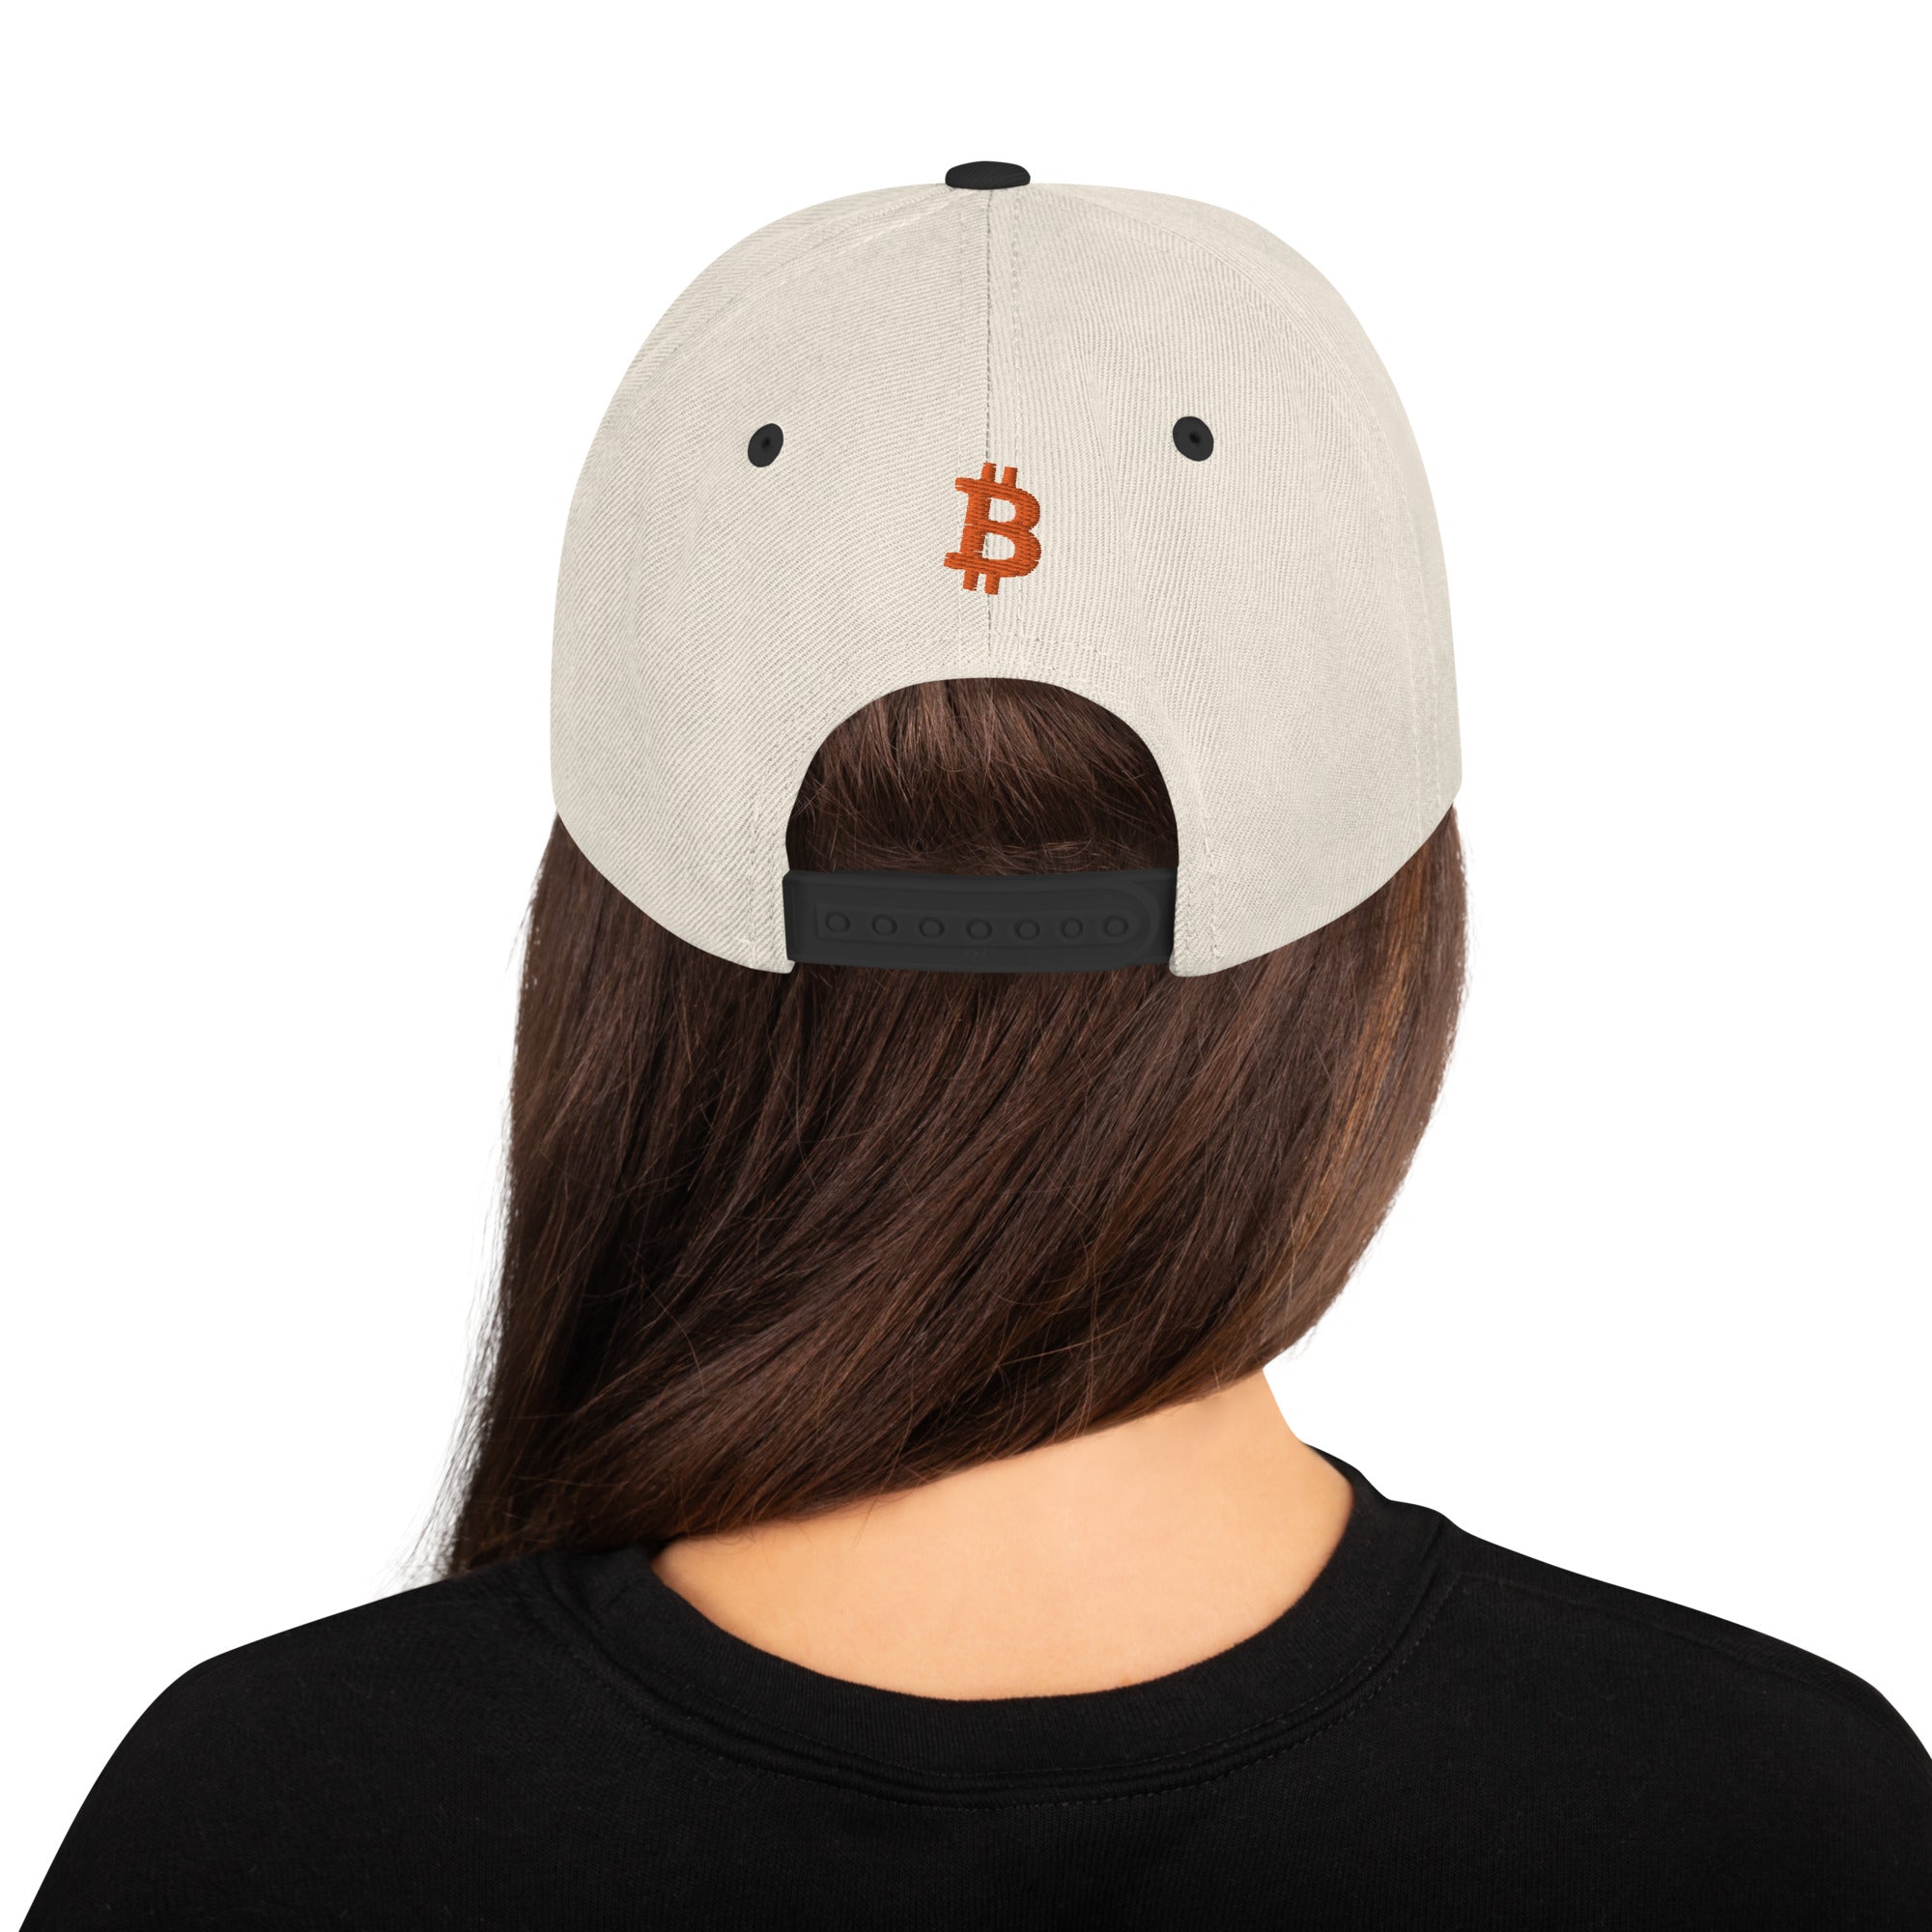 Snapback Hat Bitcoin Logo